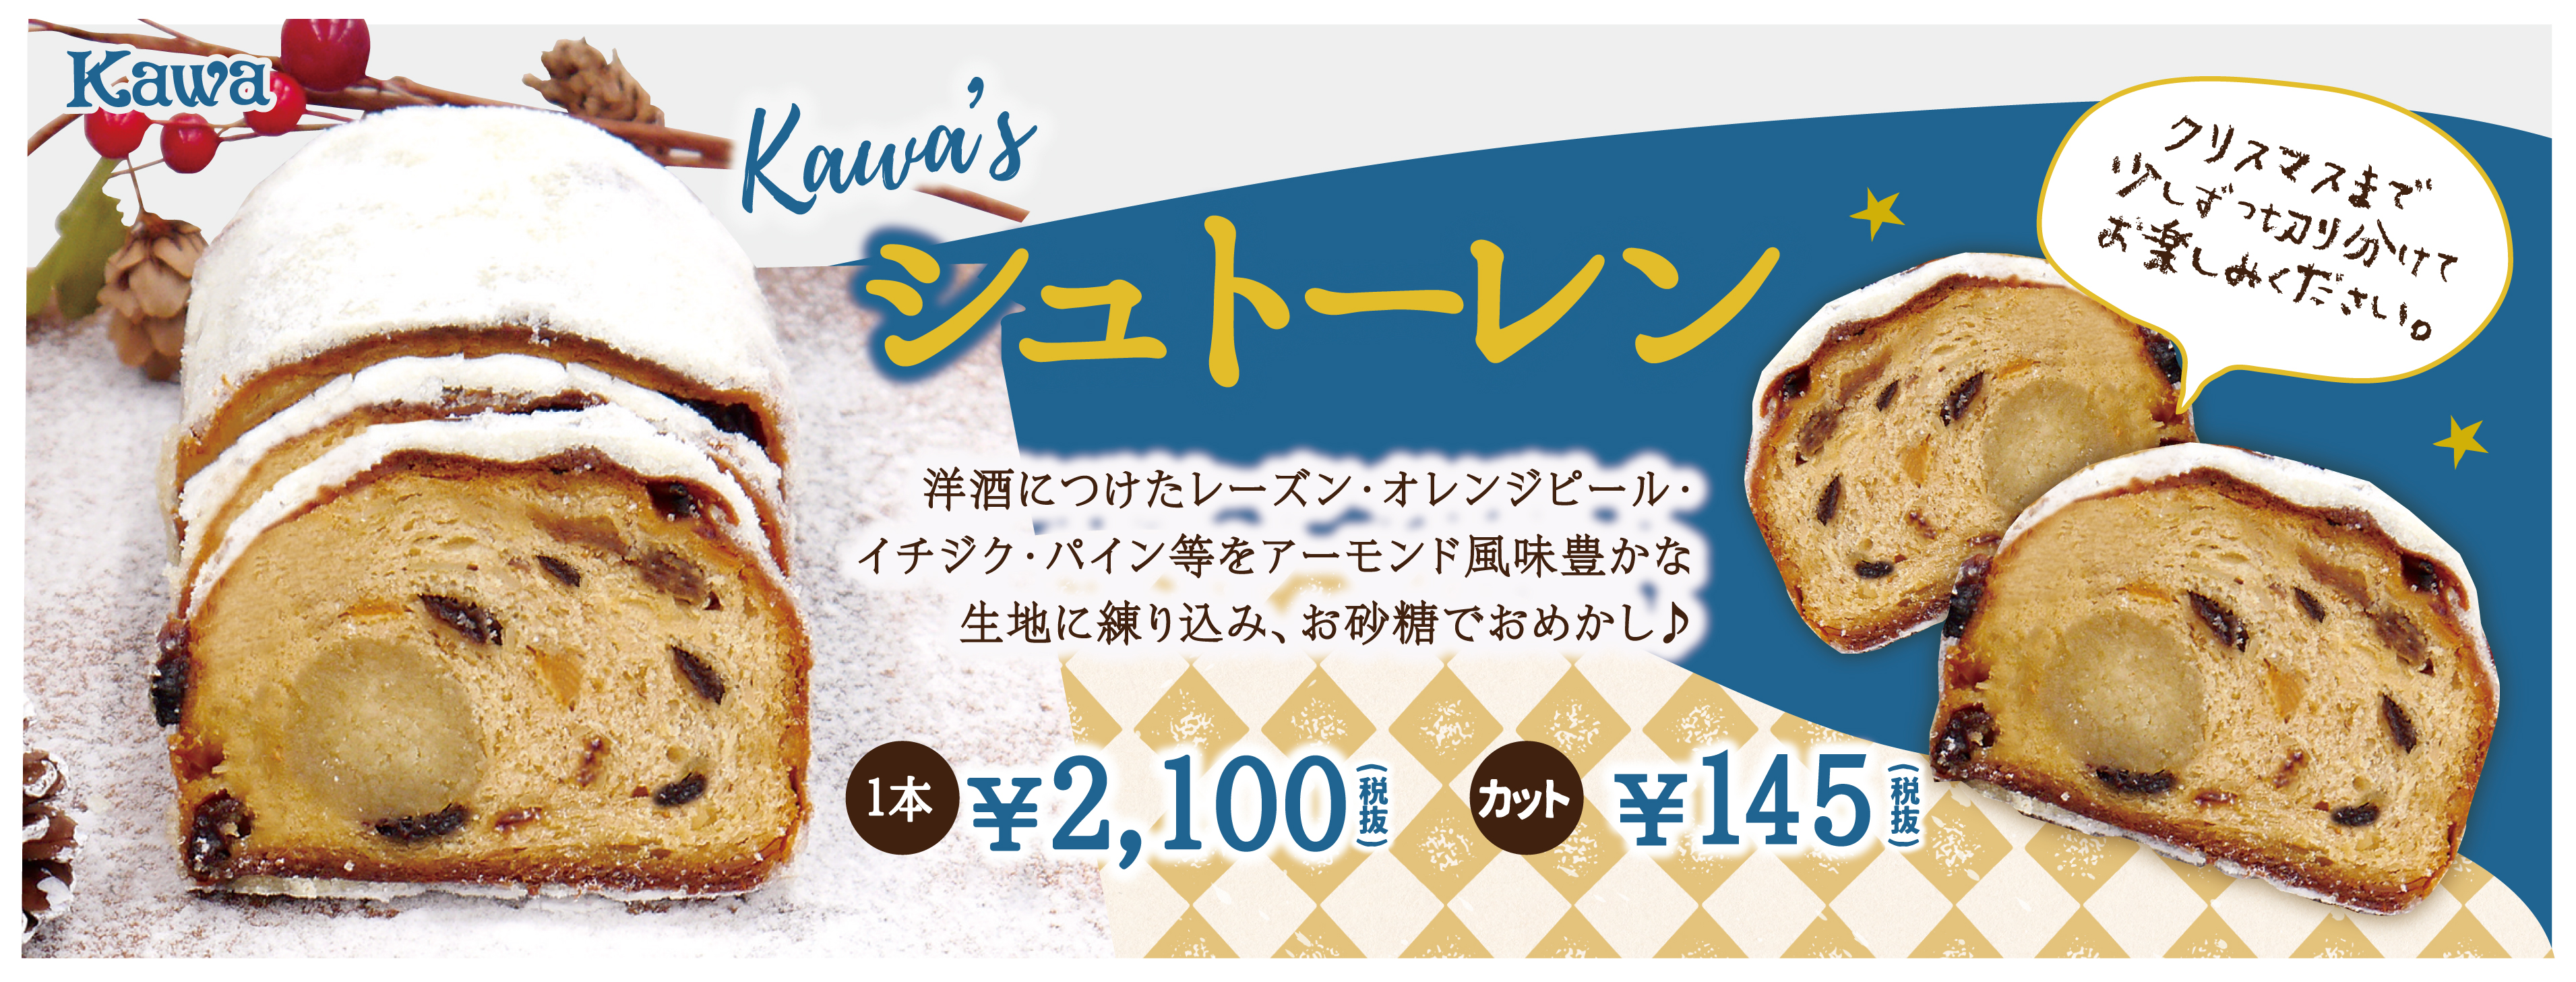 kawaのクリスマスギフトが今年も登場です☆ | パン工房カワ